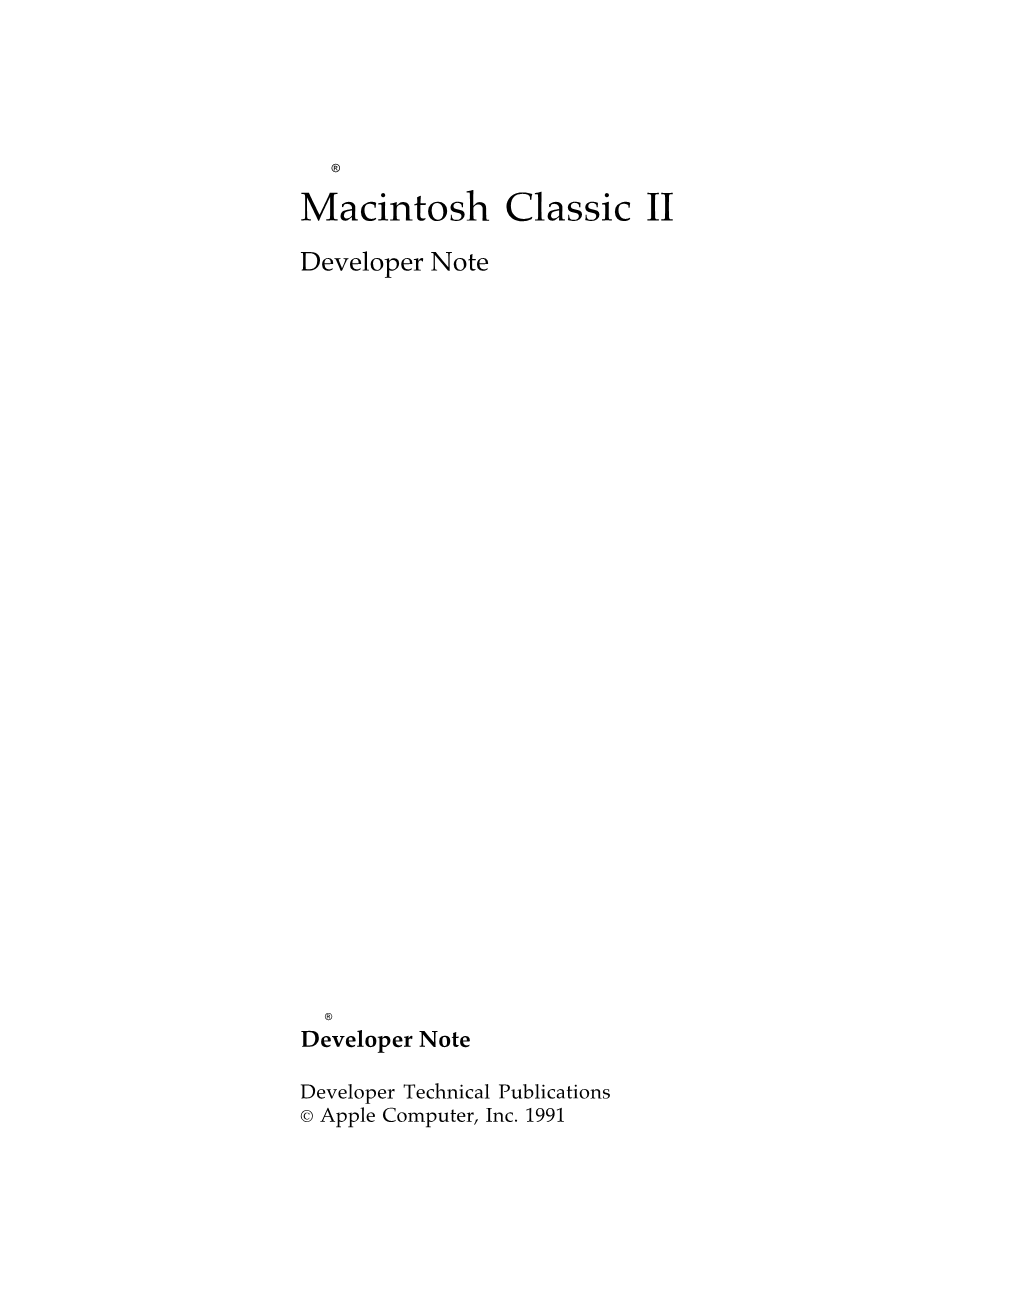 Macintosh Classic II Developer Note